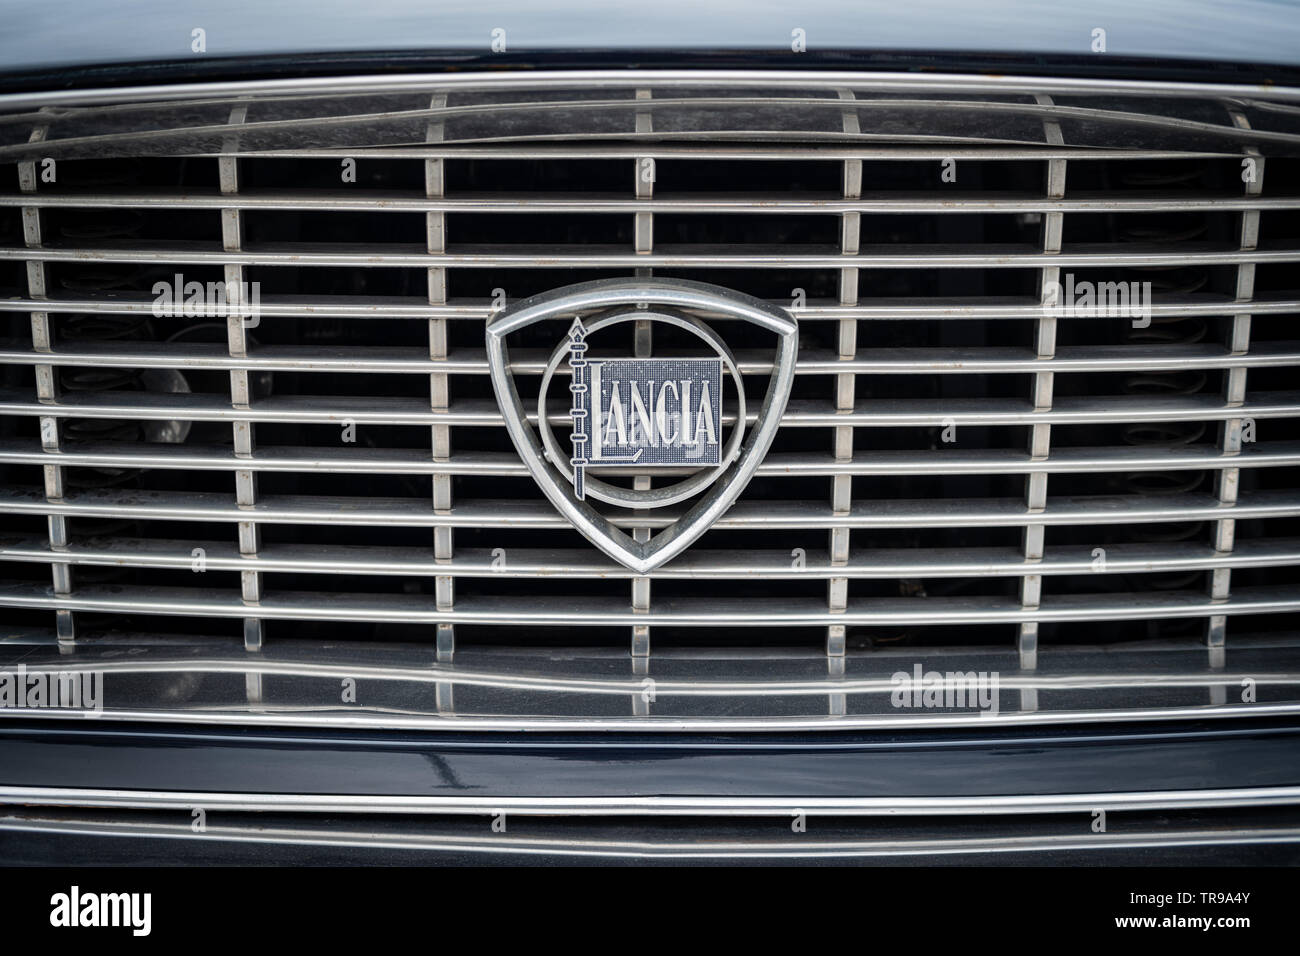 Close up detail of Lancia logo on vintage car Stock Photo